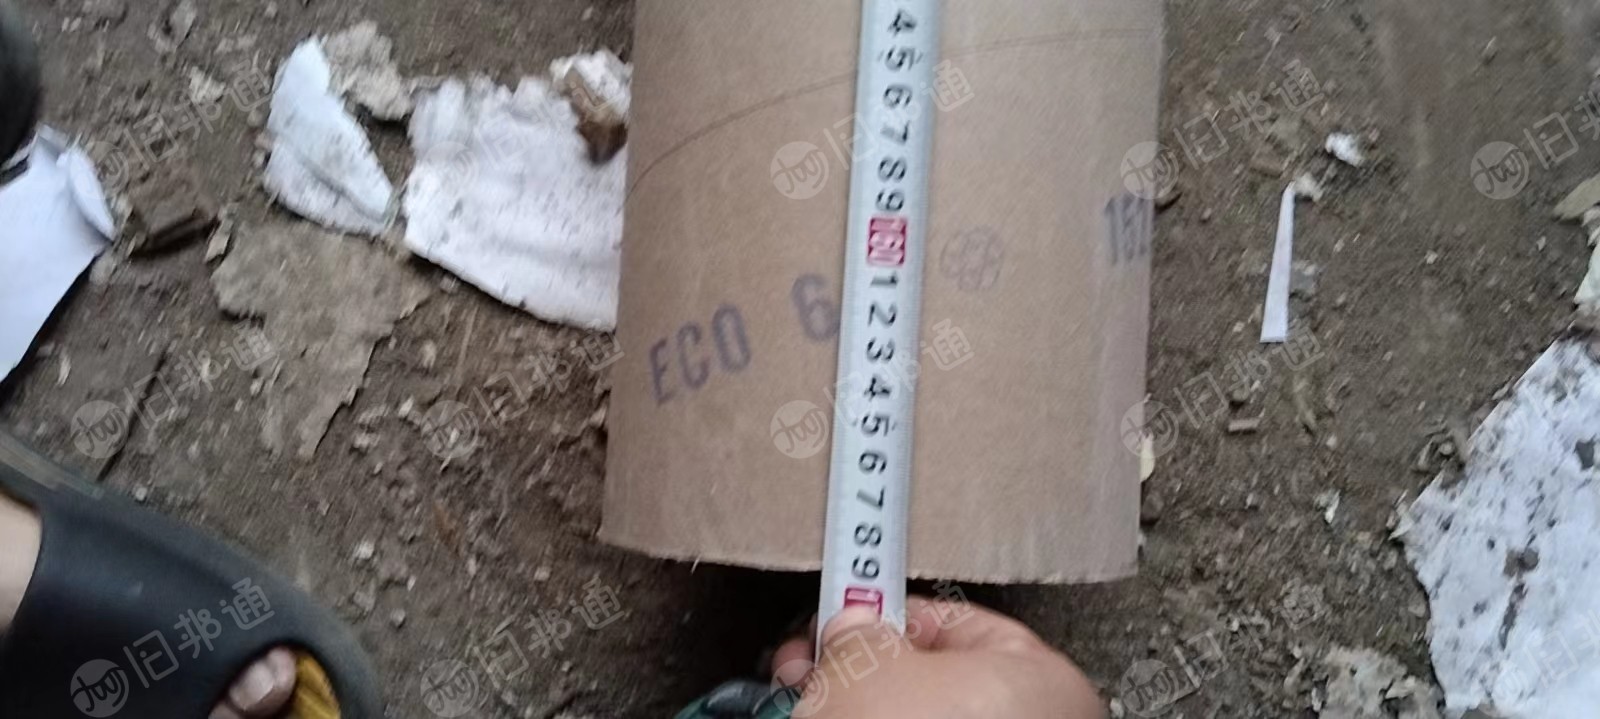 出售二手纸管，直径18cm，厚度1.5cm，长度169cm，现货10来吨，湖南岳阳提货